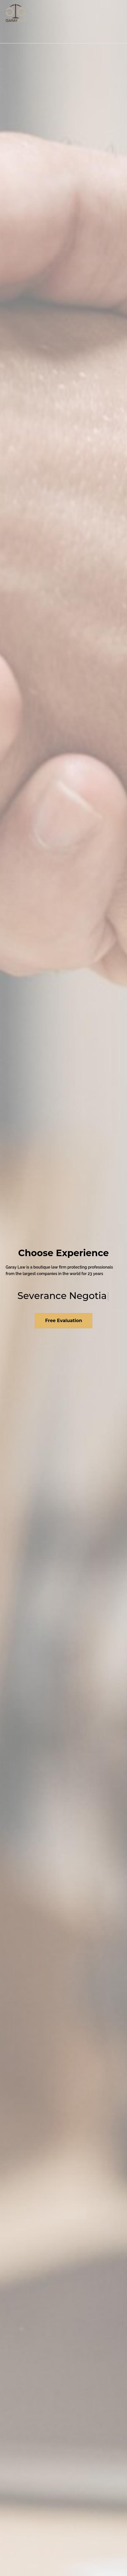 Garay Law - Irvine CA Lawyers